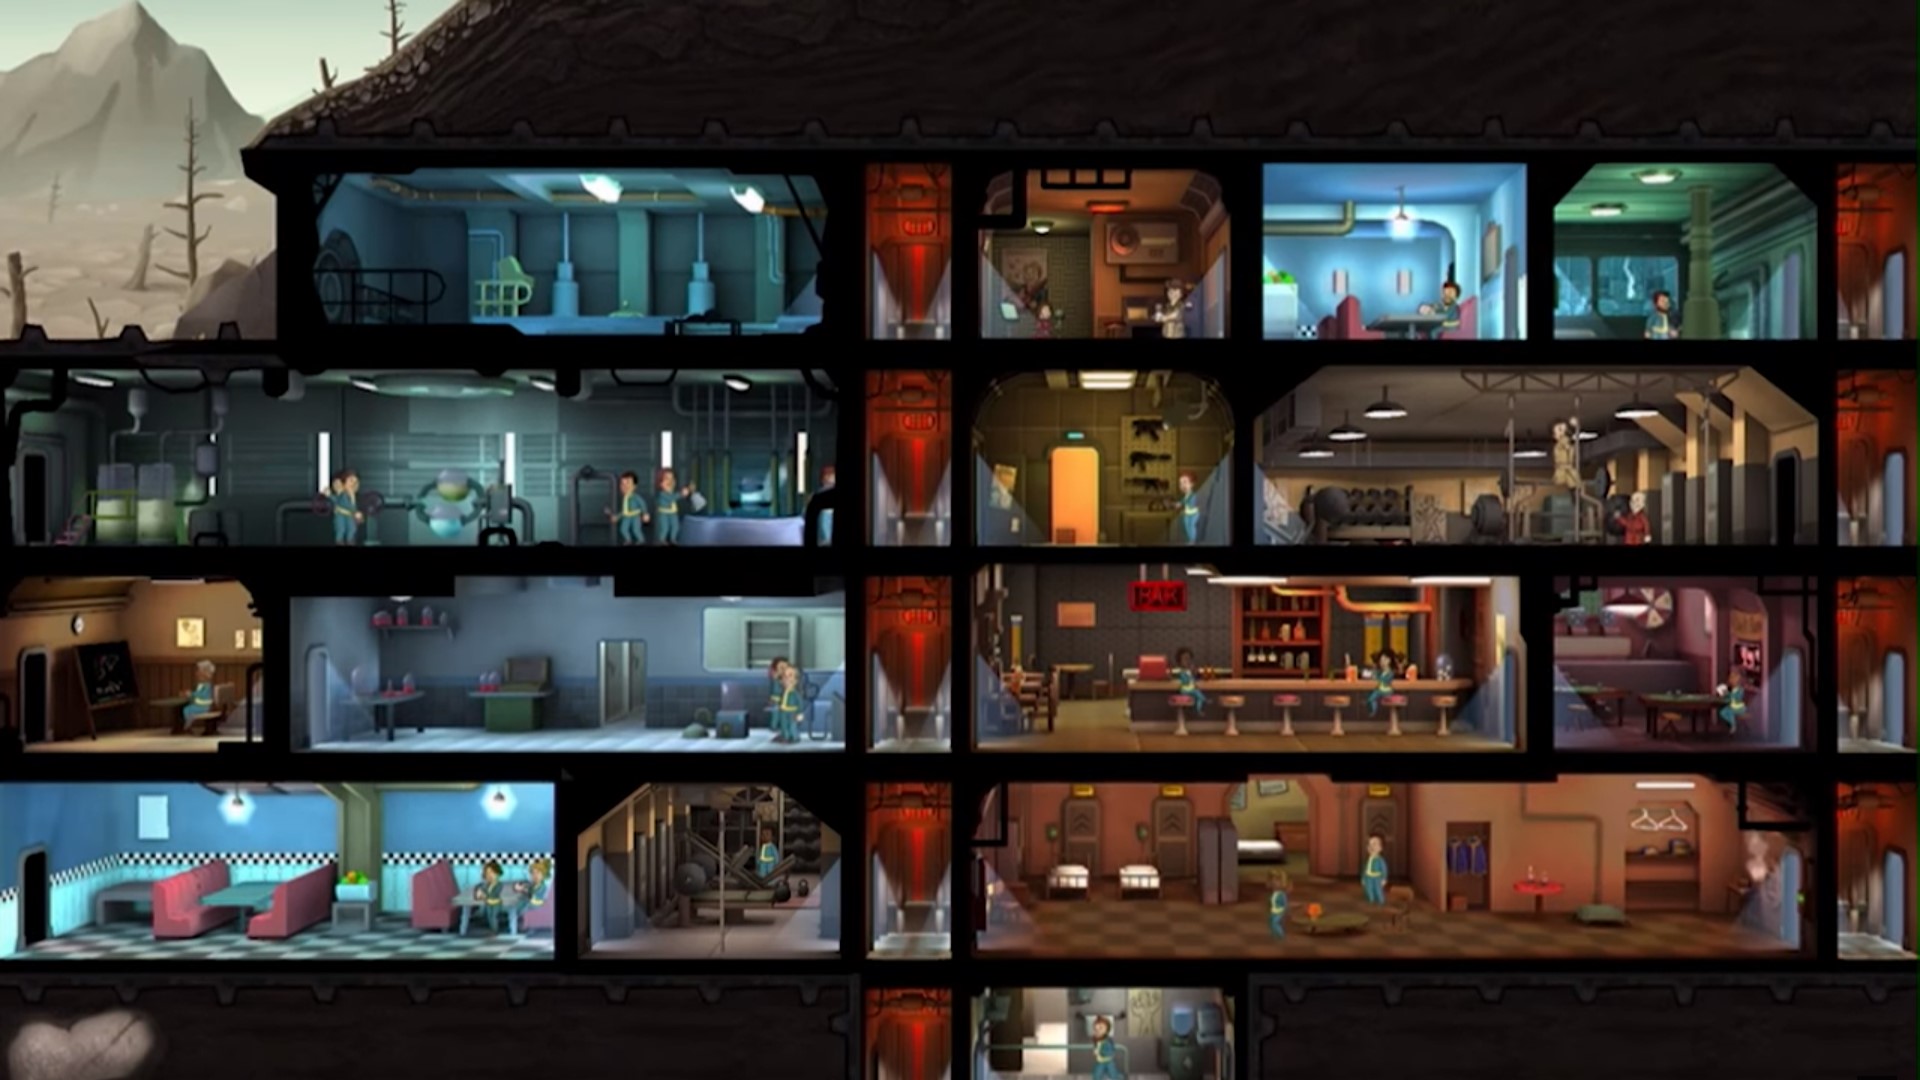 เกมกลยุทธ์มือถือที่ดีที่สุด: Fallout Shelter รูปภาพแสดงที่พักพิงที่มีห้องพักและผู้คนมากมาย